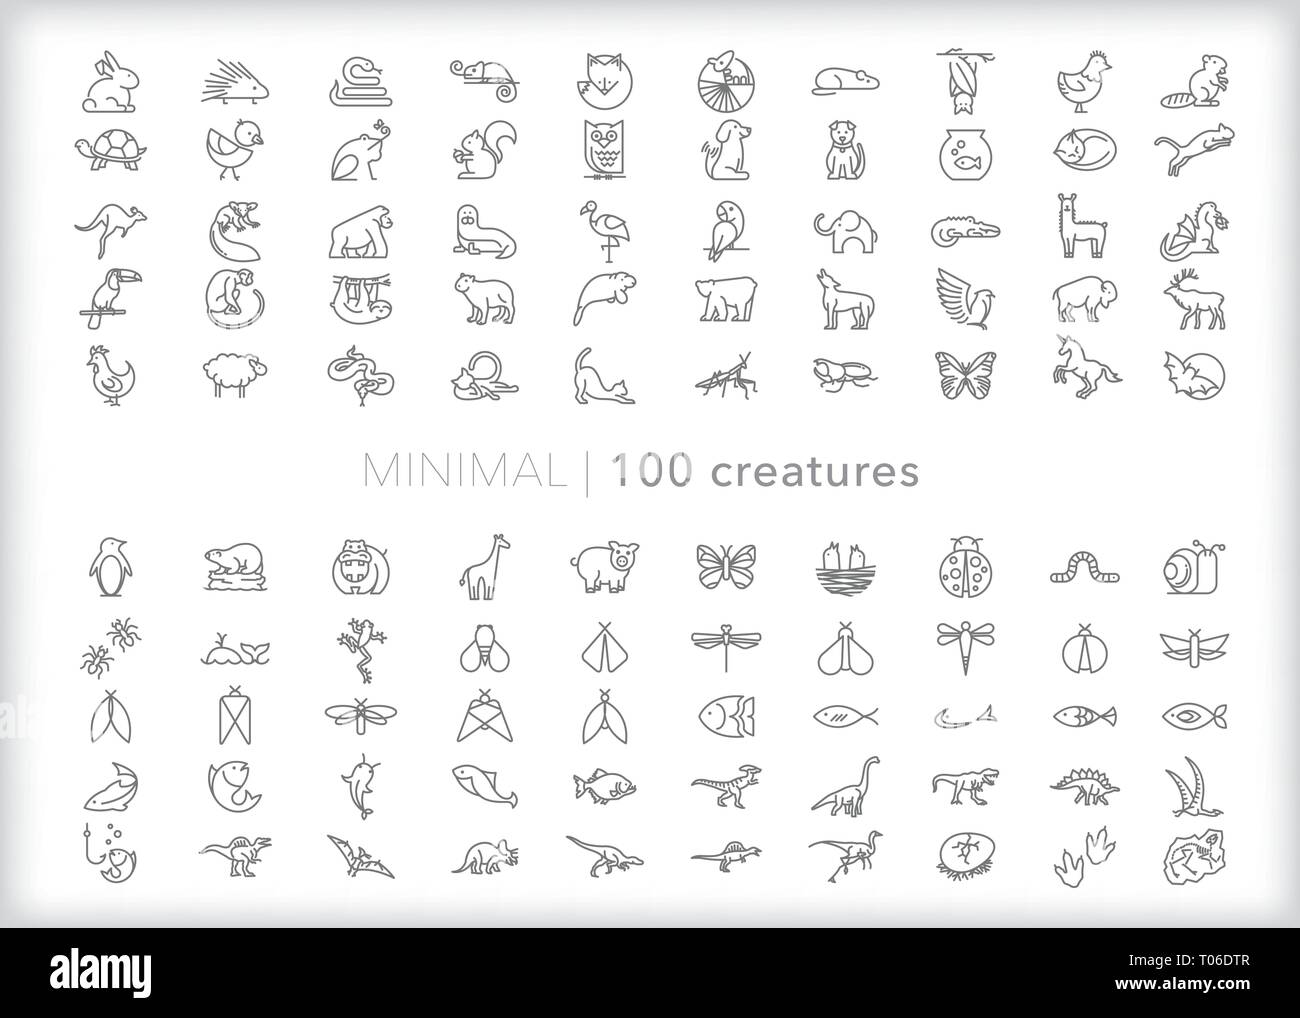 Conjunto de 100 iconos de la línea animal de mascotas, animales de zoológico safari, animales de granja, animales, peces, reptiles, mamíferos, dinosaurios, insectos, bichos y bichos Ilustración del Vector